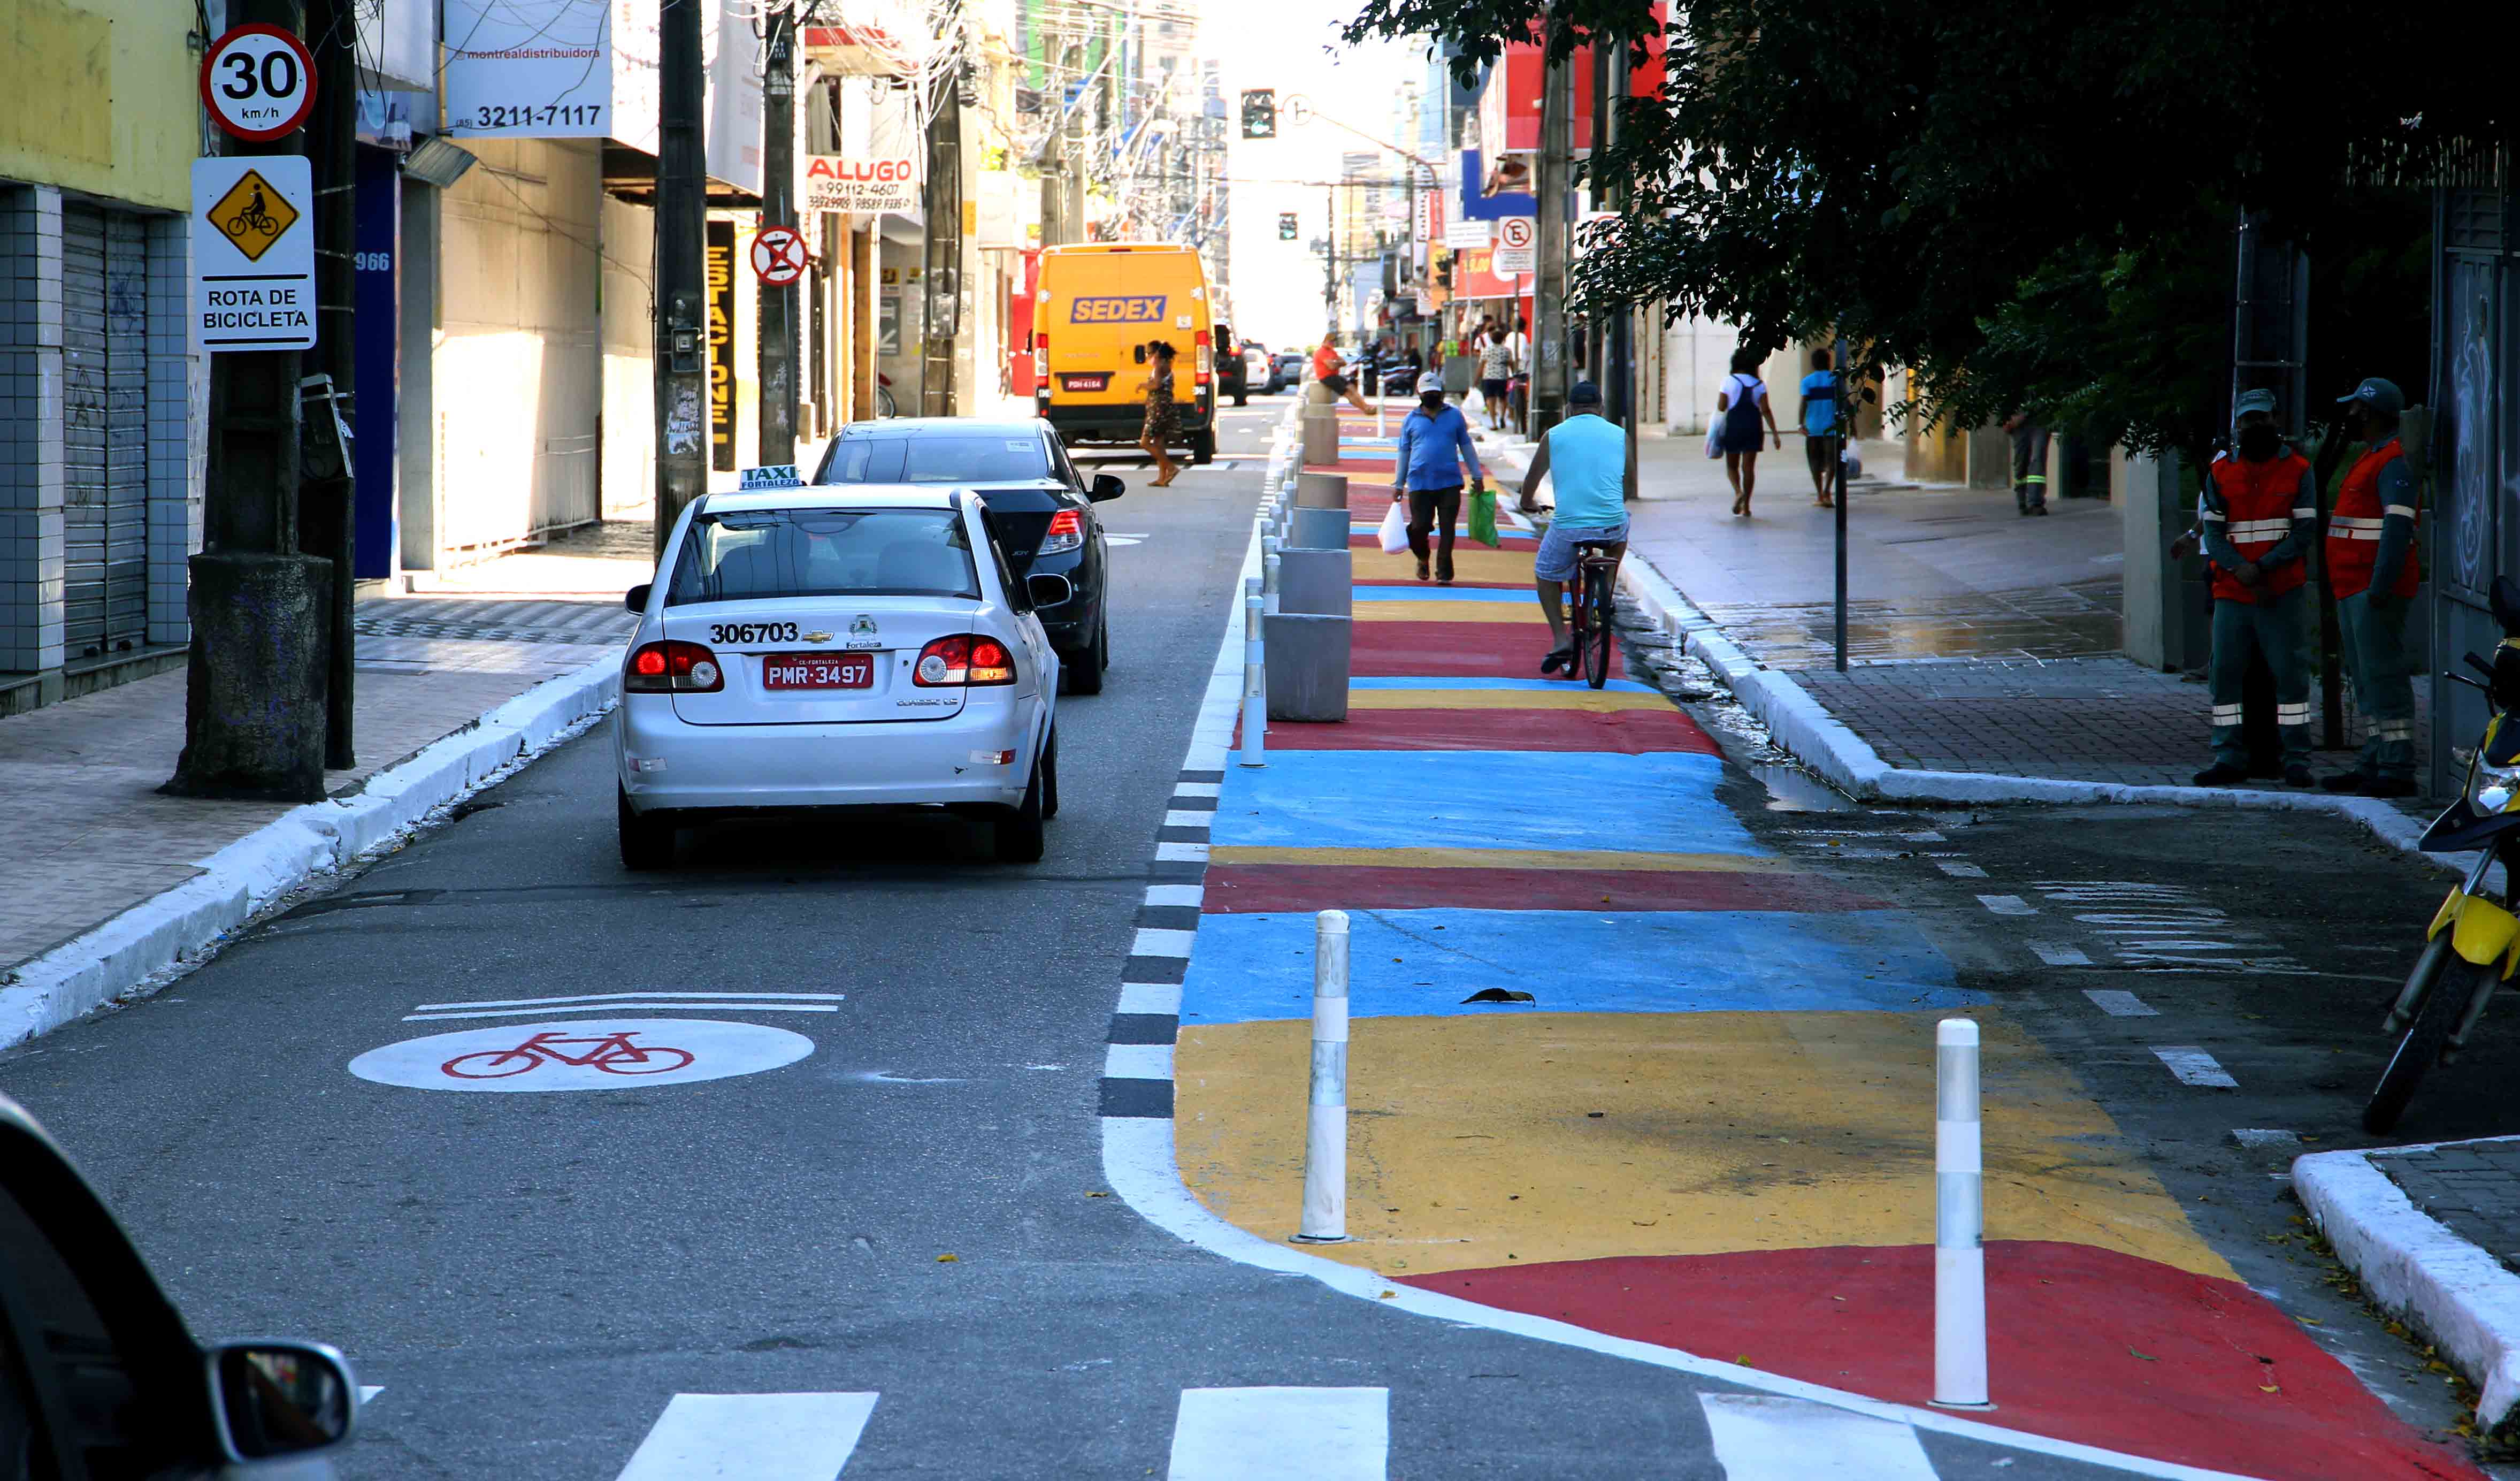 a foto mostra uma rua do centro do carros e pedestres, o detalhe é que parte da via está pintada de amarelo e vermelho e com cones para que as pessoas possam circular em segurança